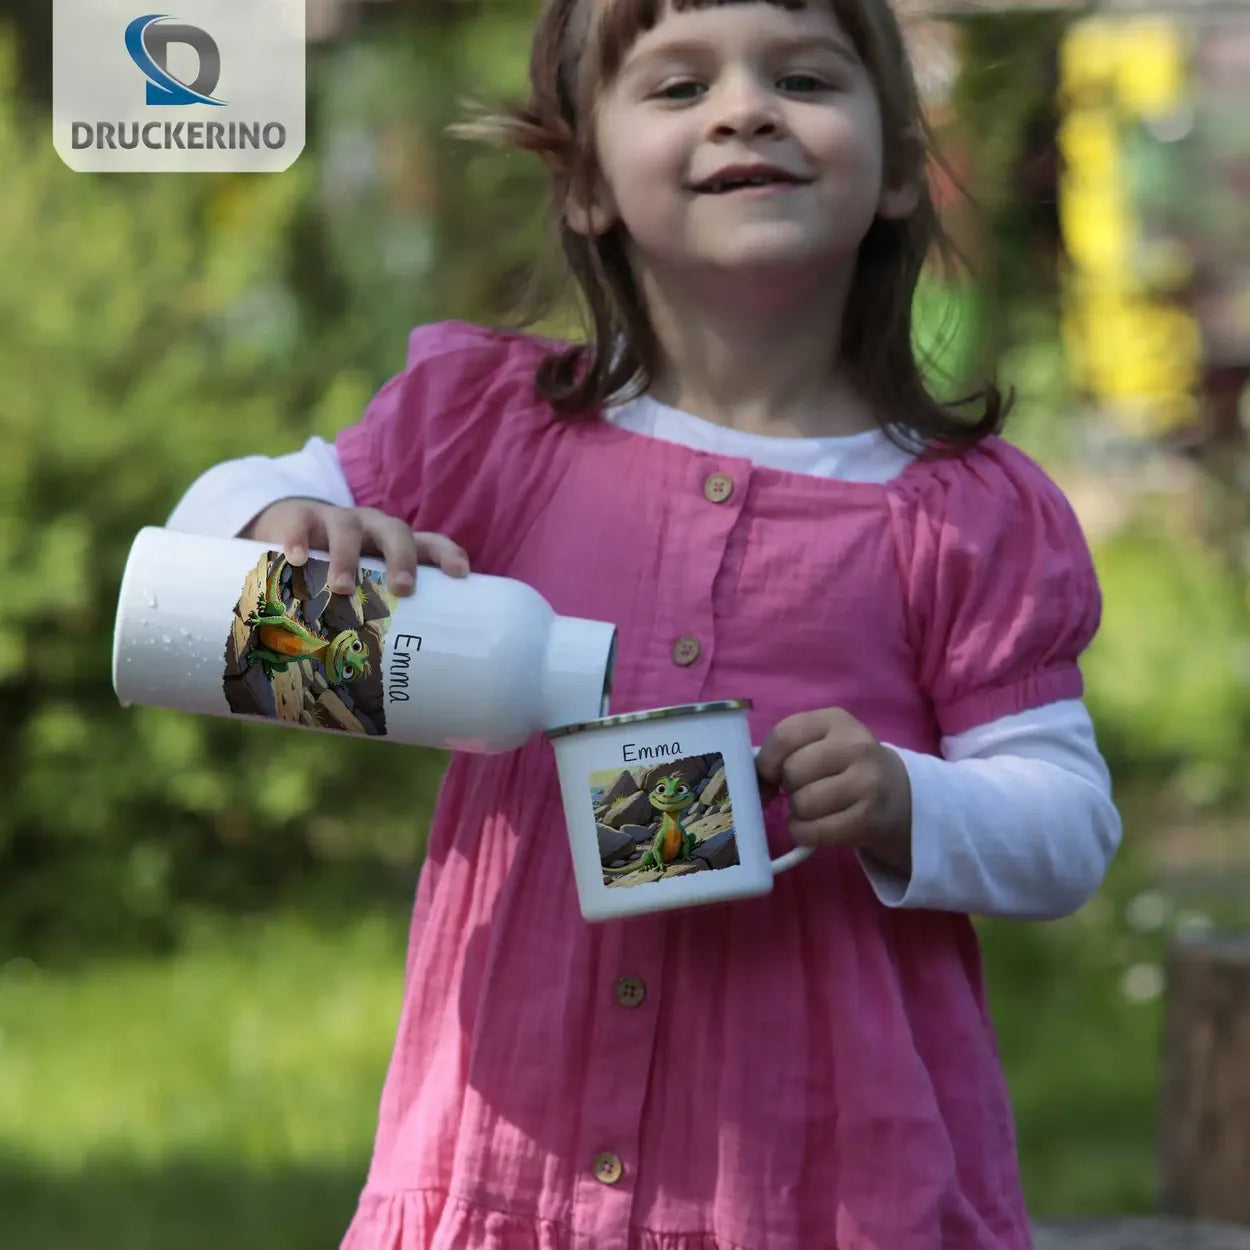 Abenteuerfreund Echsen Emaille Tasse für Kinder personalisiert Emailletasse Druckerino   